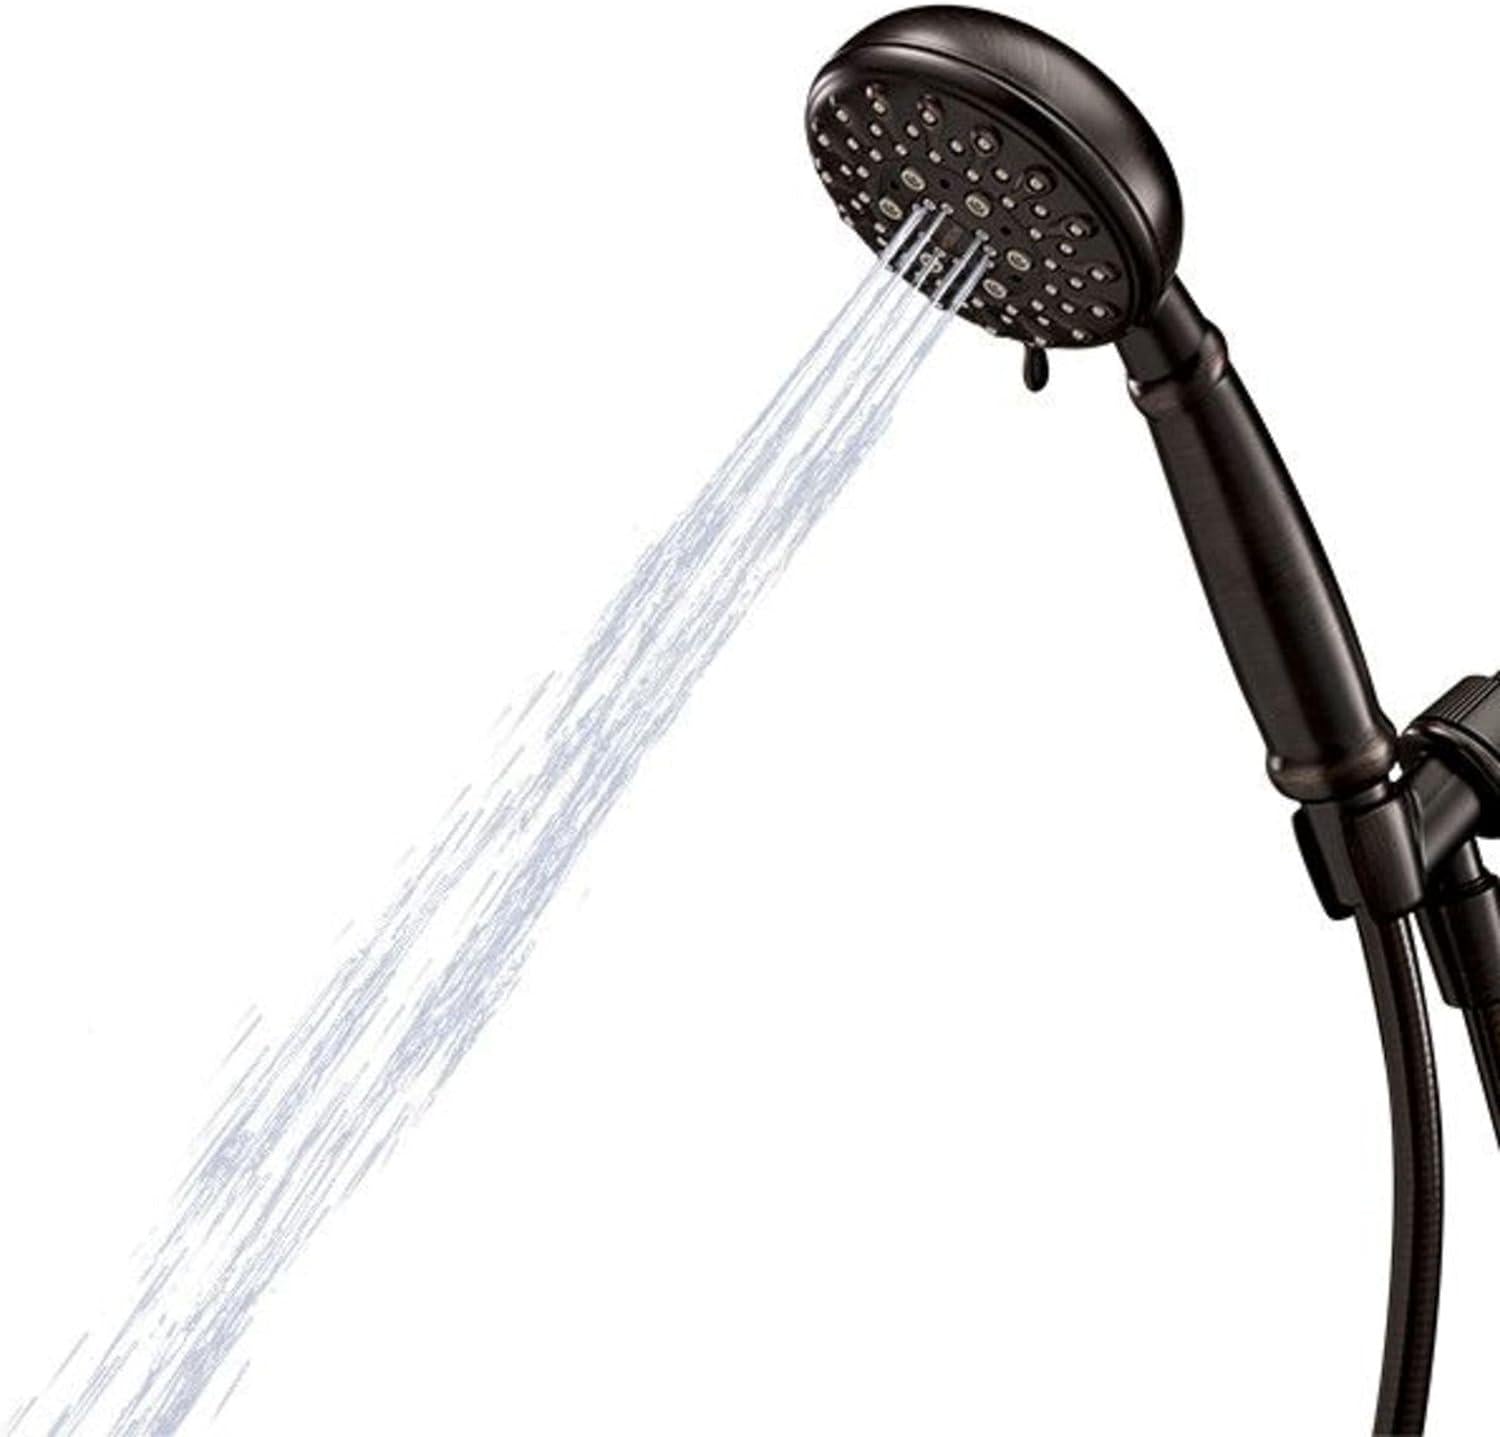 Moen Banbury Mediterranean Bronze 5-Spray Hand Shower with Hose and Bracket, 4-Inch Diameter Showerhead, 23046BRB